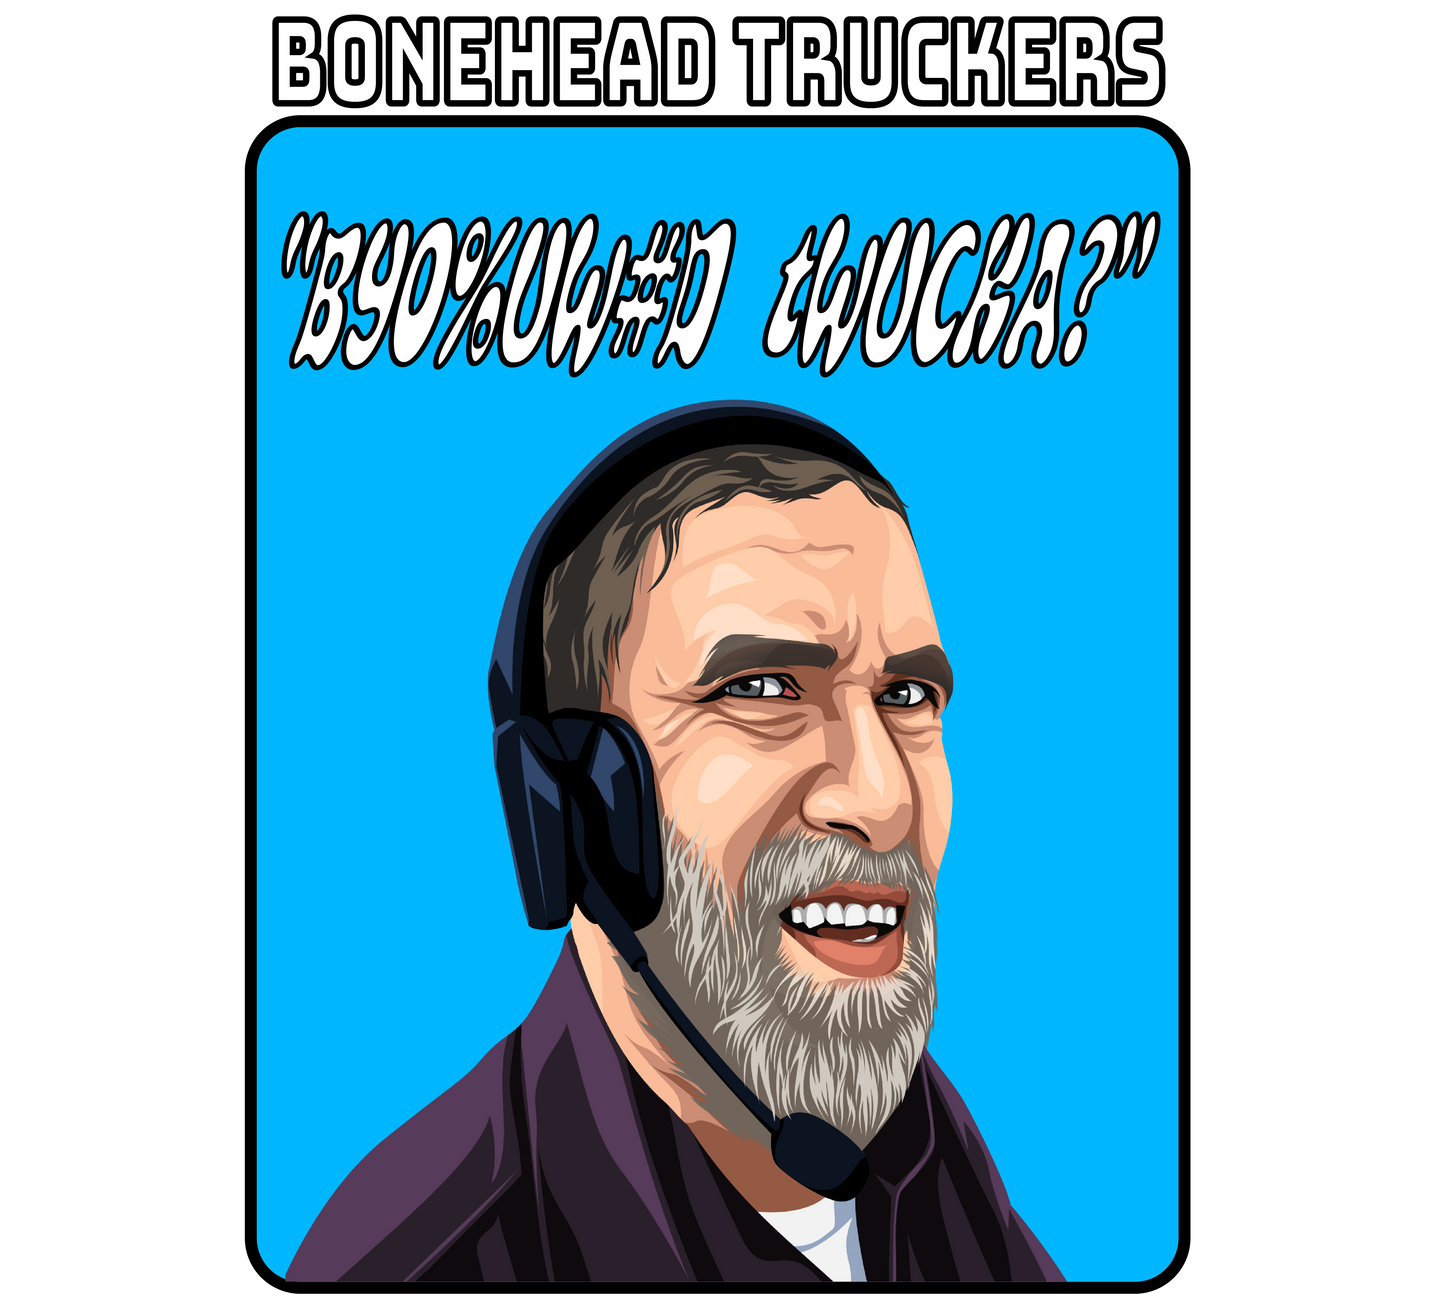 Bonehead Twucka?